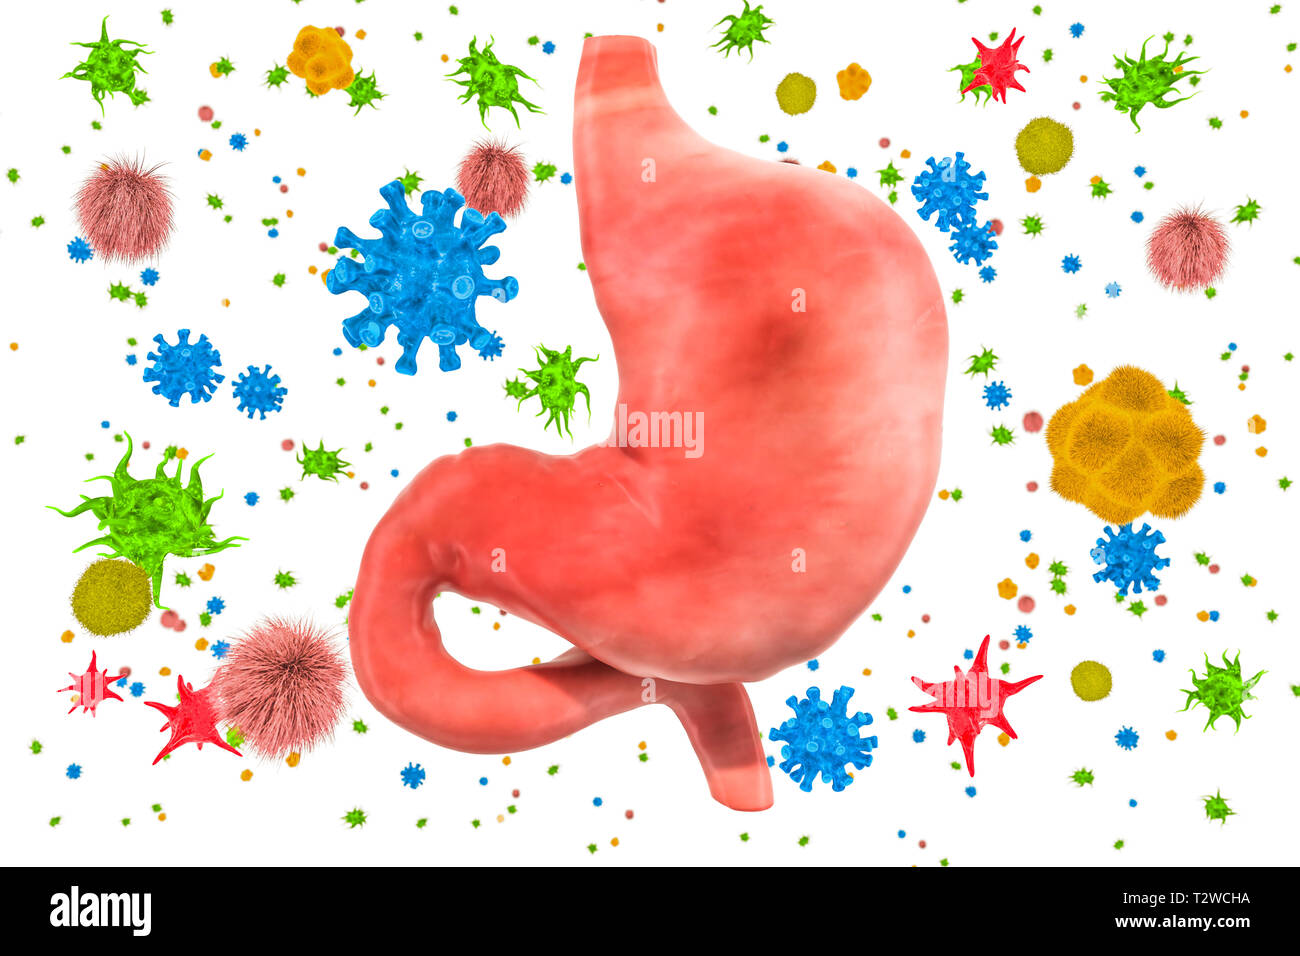 Estómago con virus y bacterias. Concepto de enfermedad del estómago, 3D rendering aislado sobre fondo blanco. Foto de stock